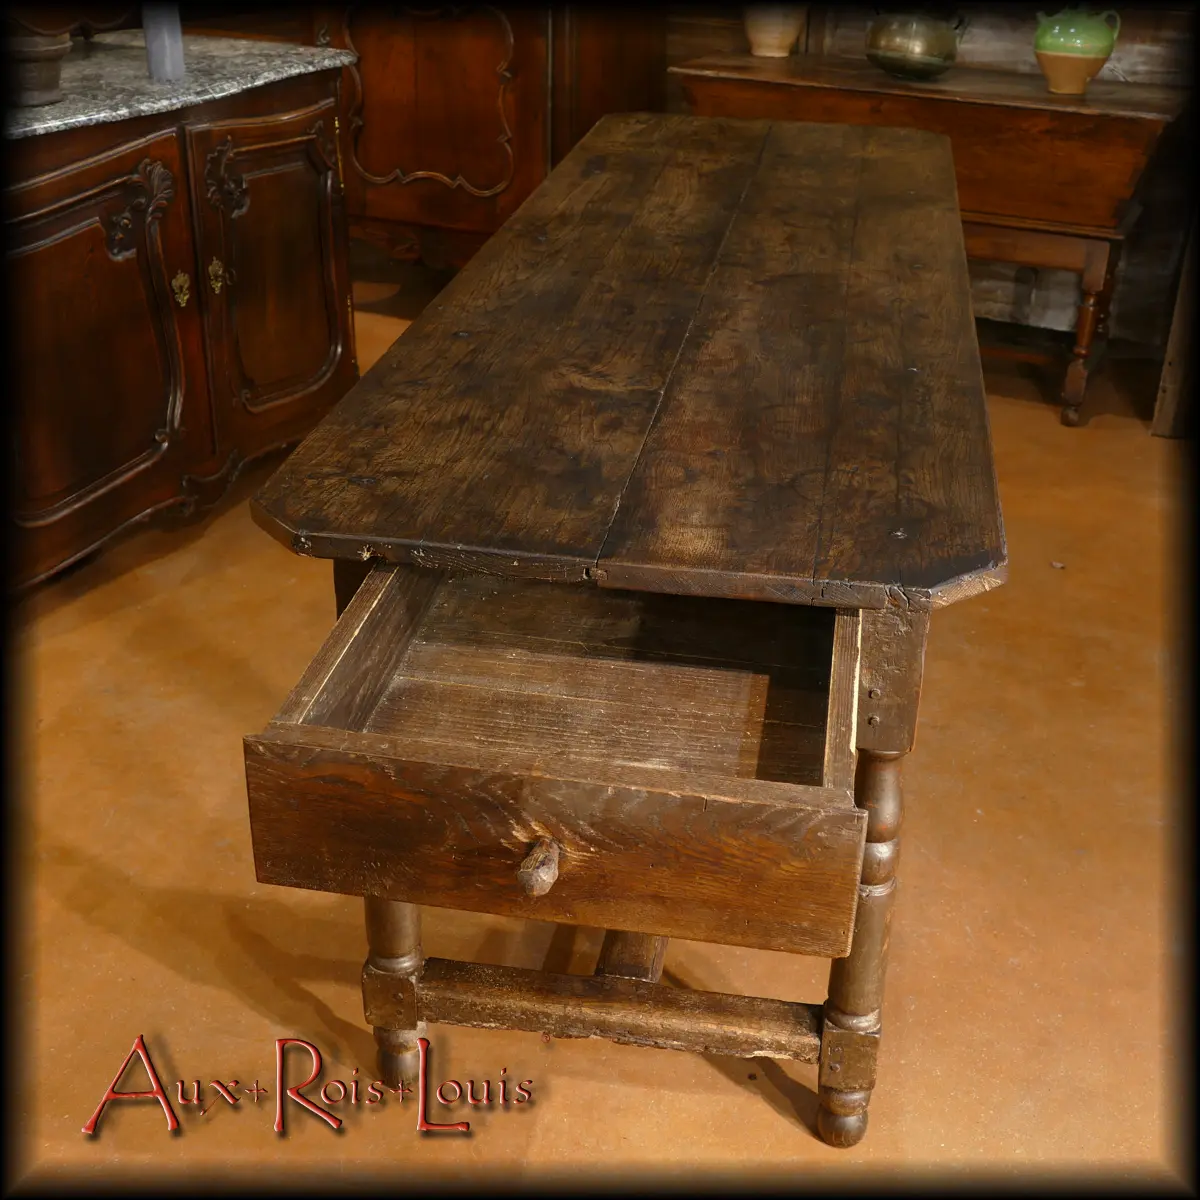 Le tiroir ouvert met en valeur l’épaisseur des planches de chêne choisies au XVIIᵉ siècle pour fabriquer cette grande table Louis XIII.